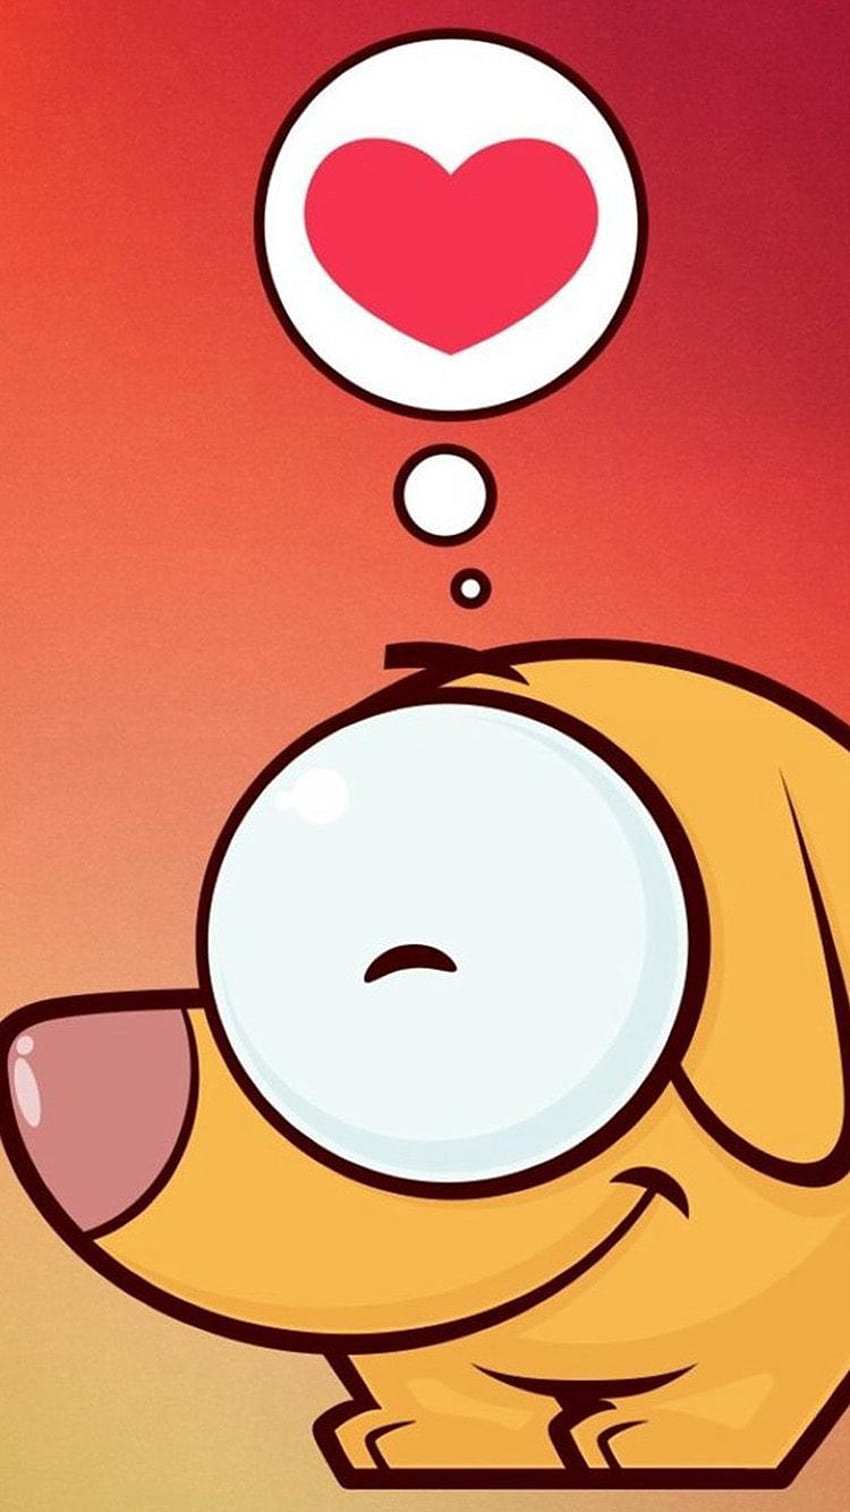 âTAP AND GET THE APP! Fun Cartoons Love Ombre Heart Orange Red iPhone 5 Wallpape. Android , Love animation , Cool for phones HD phone wallpaper